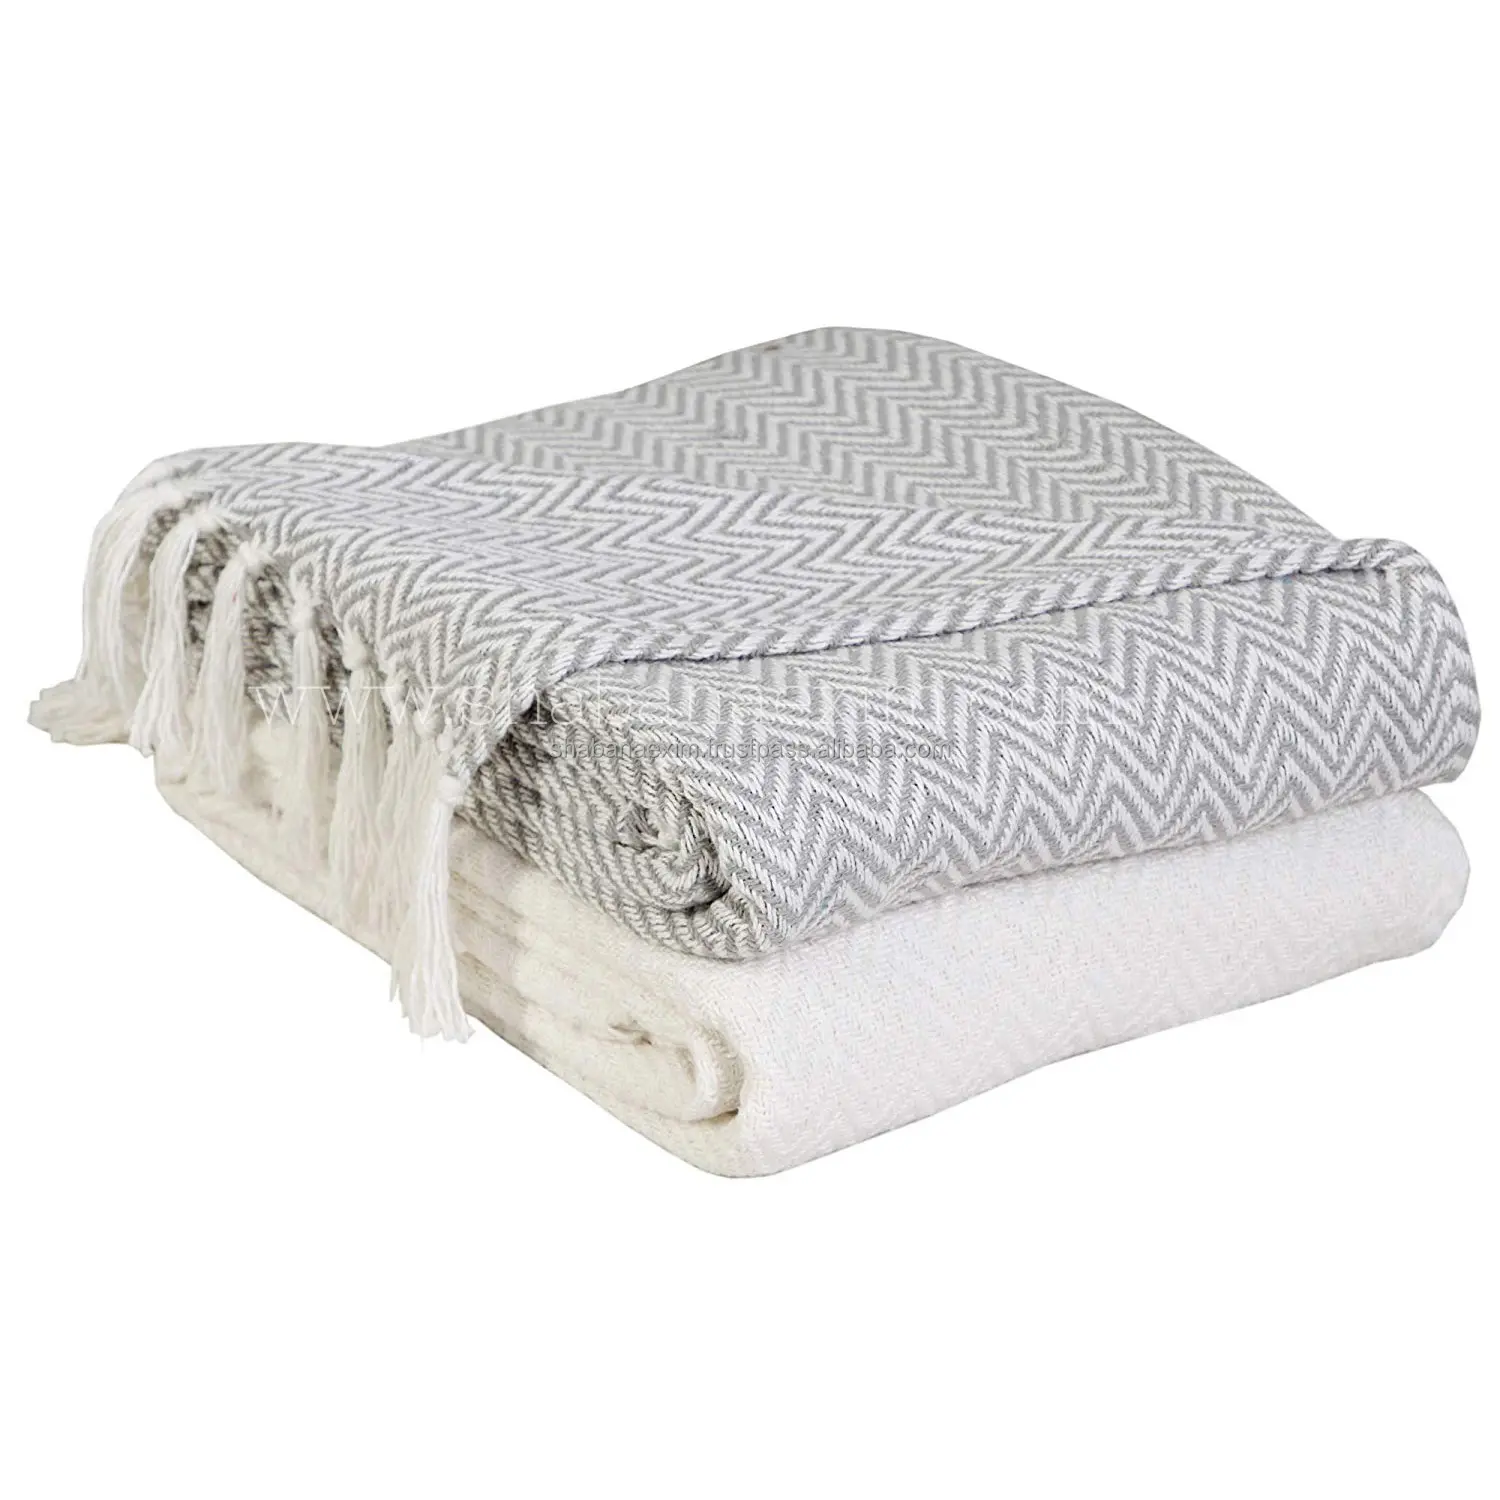 Моющиеся Уютные теплые накидки и одеяла премиум класса хлопчатобумажные тканые наволочки в стиле бохо для домашнего декора из Индии